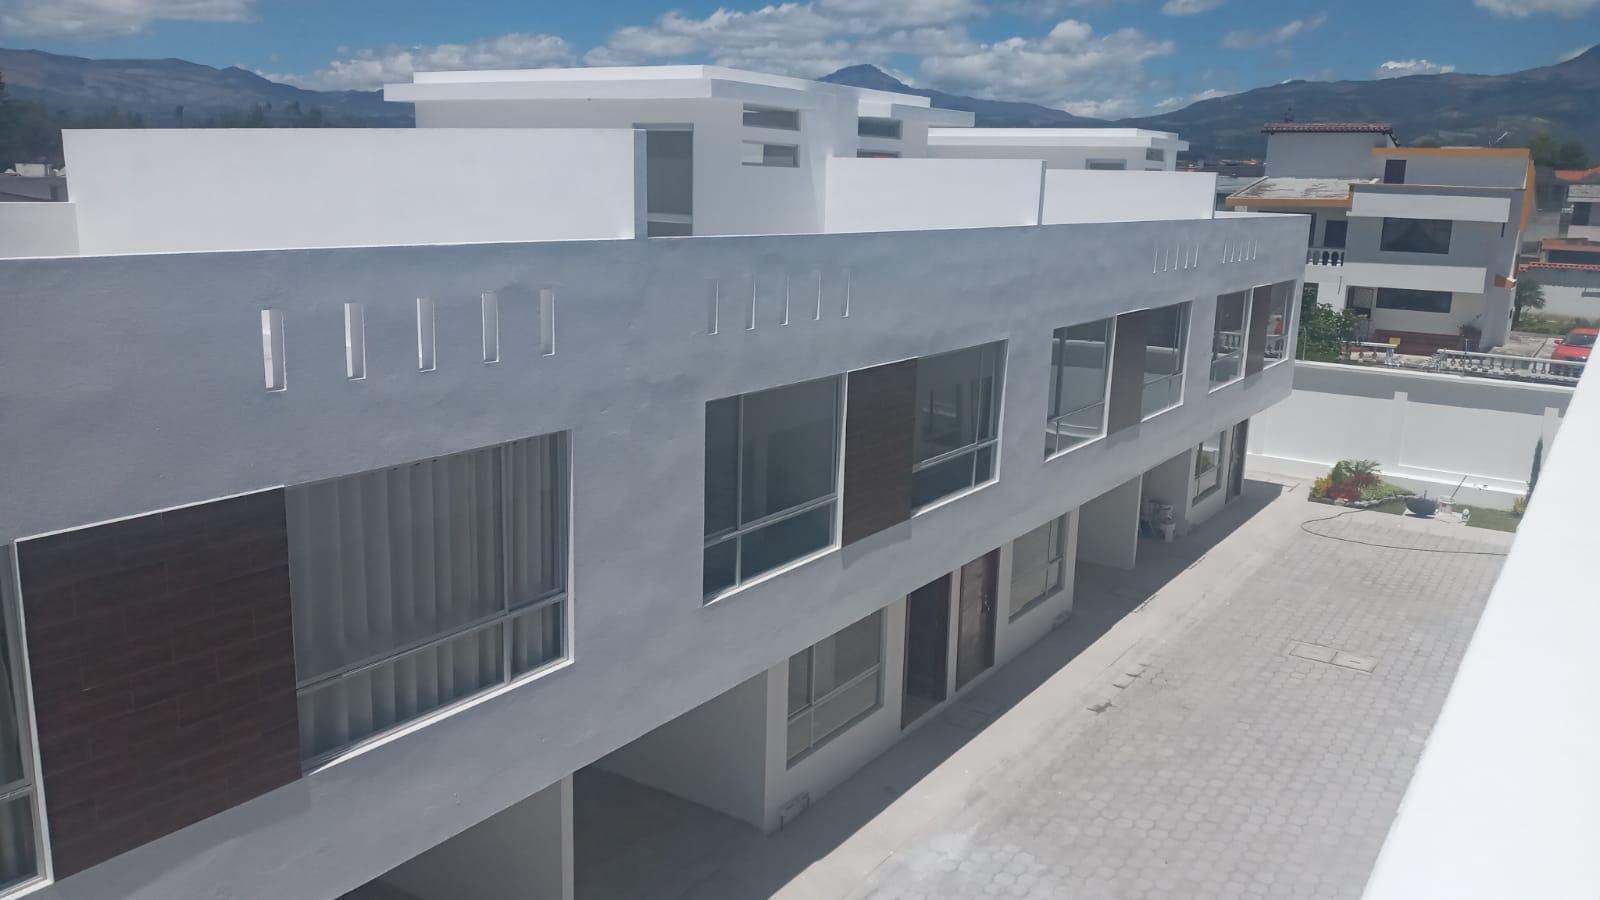 Casas en Venta VIP en Conjunto, de 3 habitaciones y terraza en Capelo, Valle de los Chillos